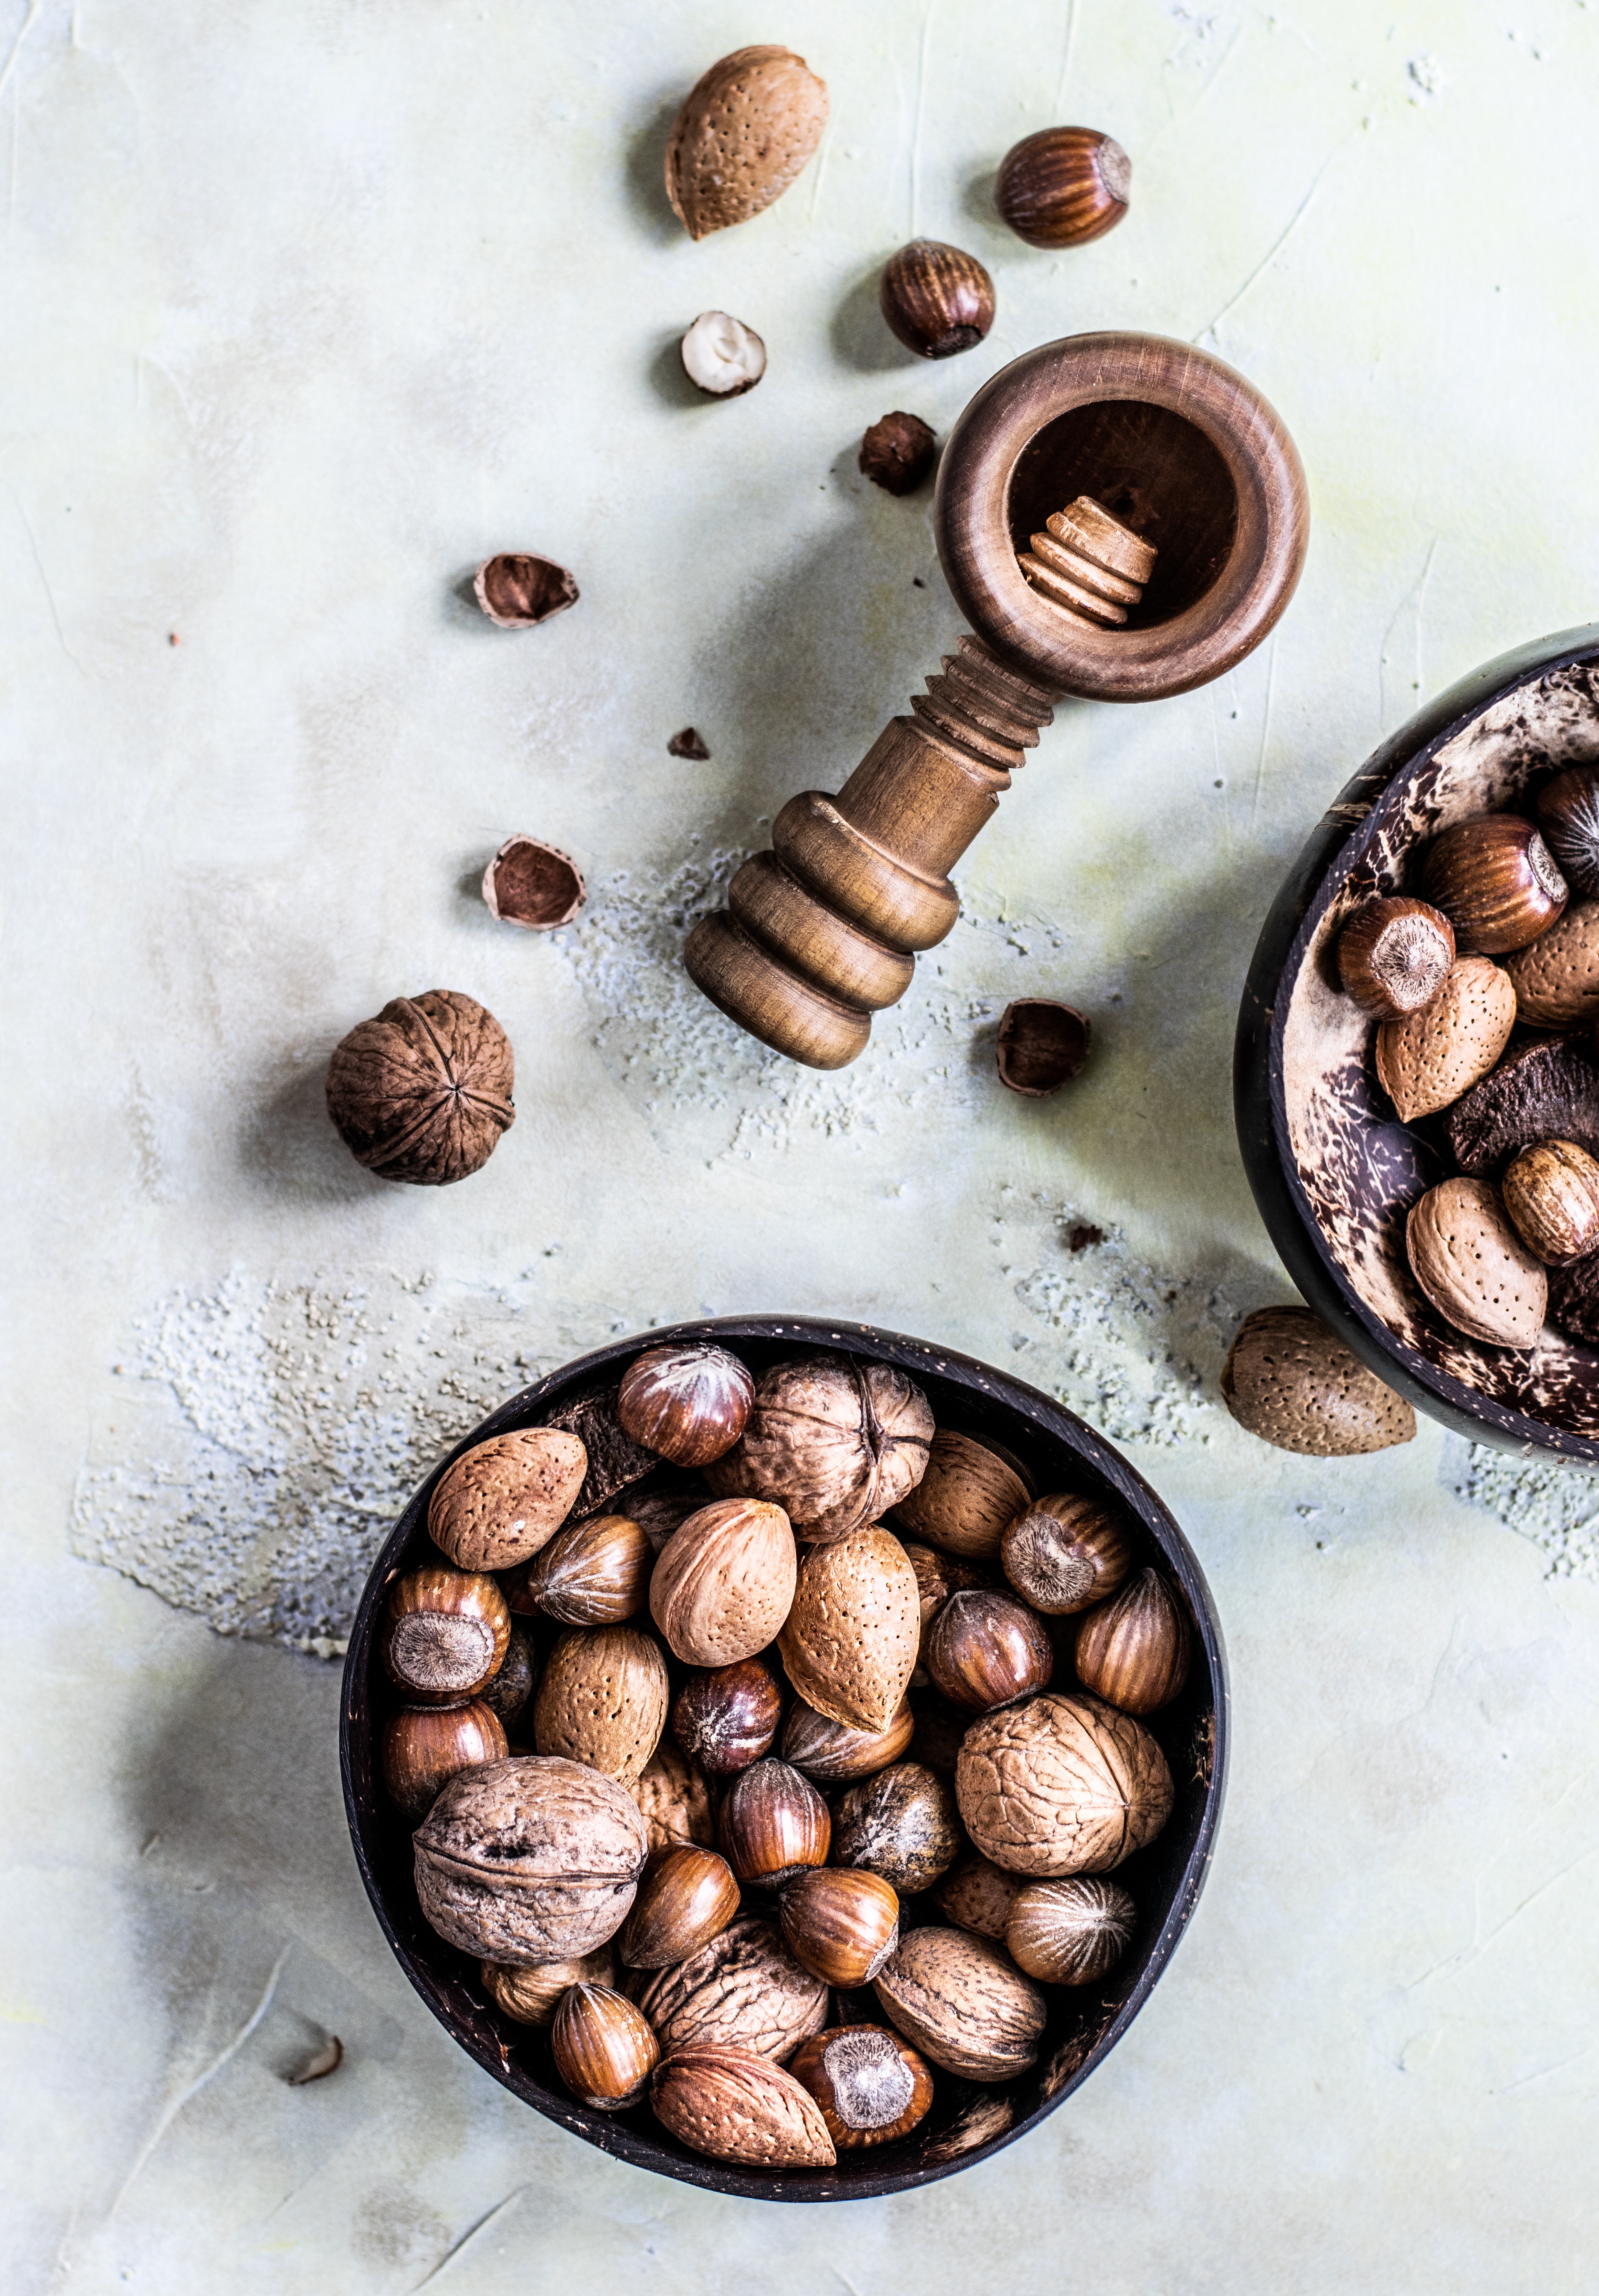 Etude Pronut : allergies aux noix - Photo Monika Grabkowska